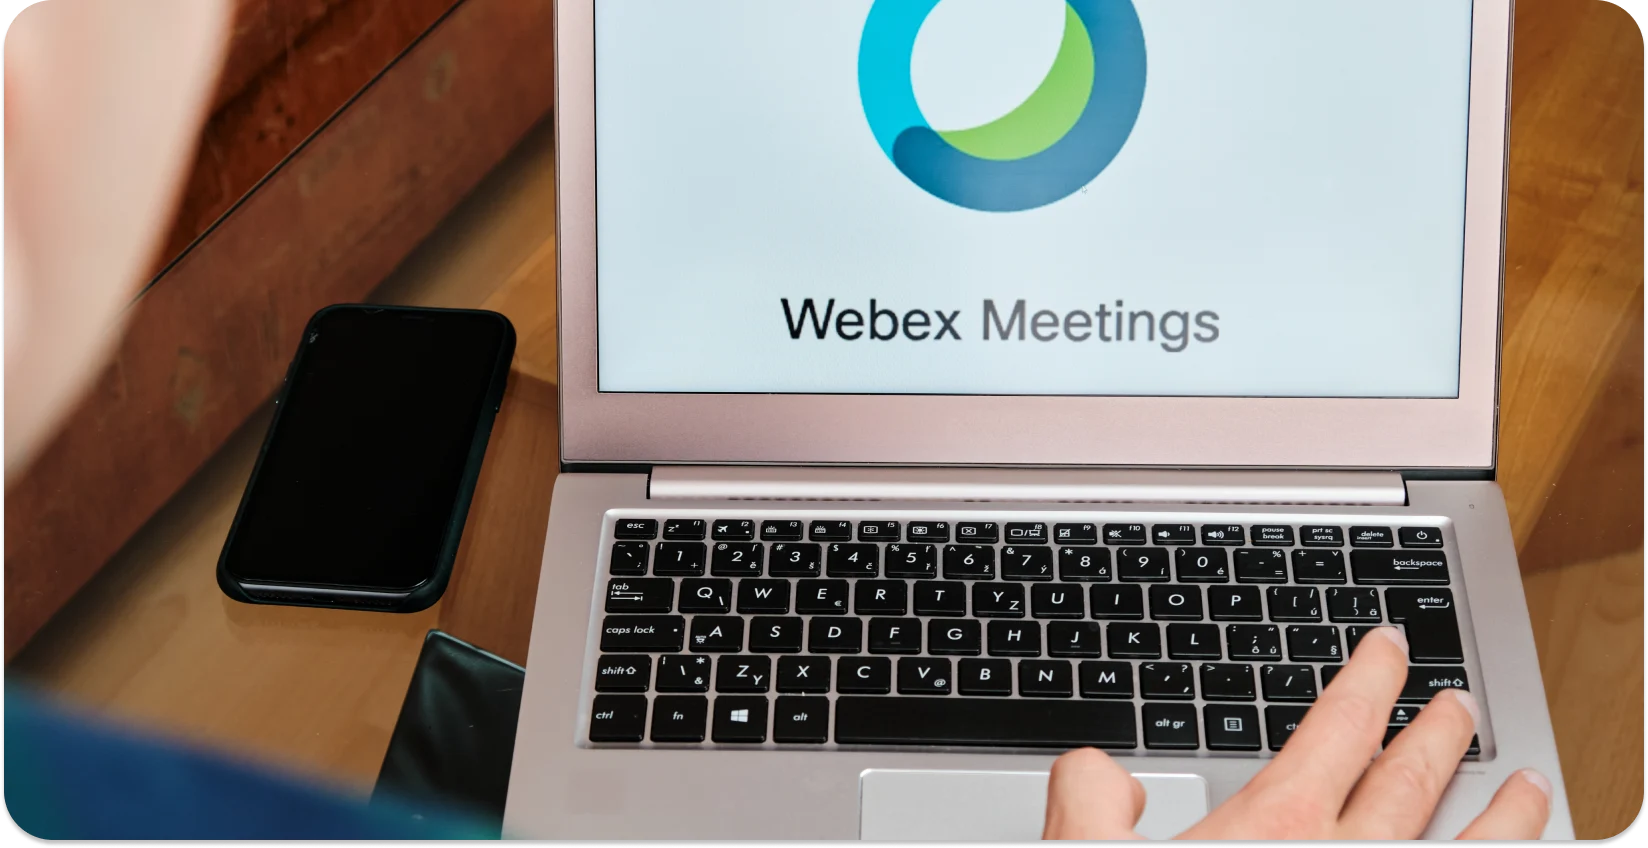 O persoană care începe o întâlnire Webex pe un laptop, gata pentru transcriere automată.